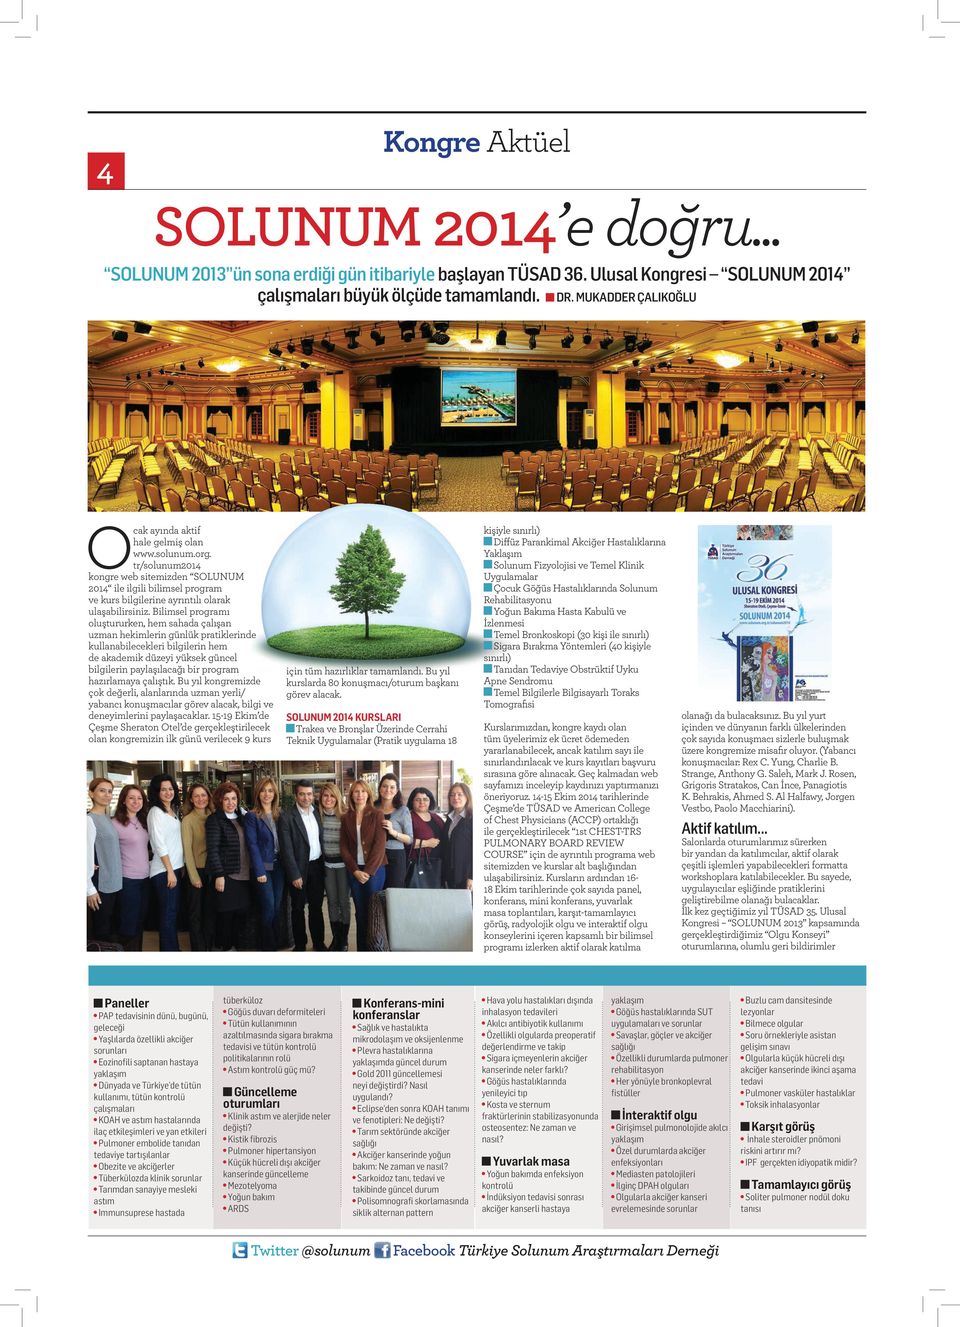 tr/solunum2014 kongre web sitemizden SOLUNUM 2014 ile ilgili bilimsel program ve kurs bilgilerine ayrıntılı olarak ulaşabilirsiniz.